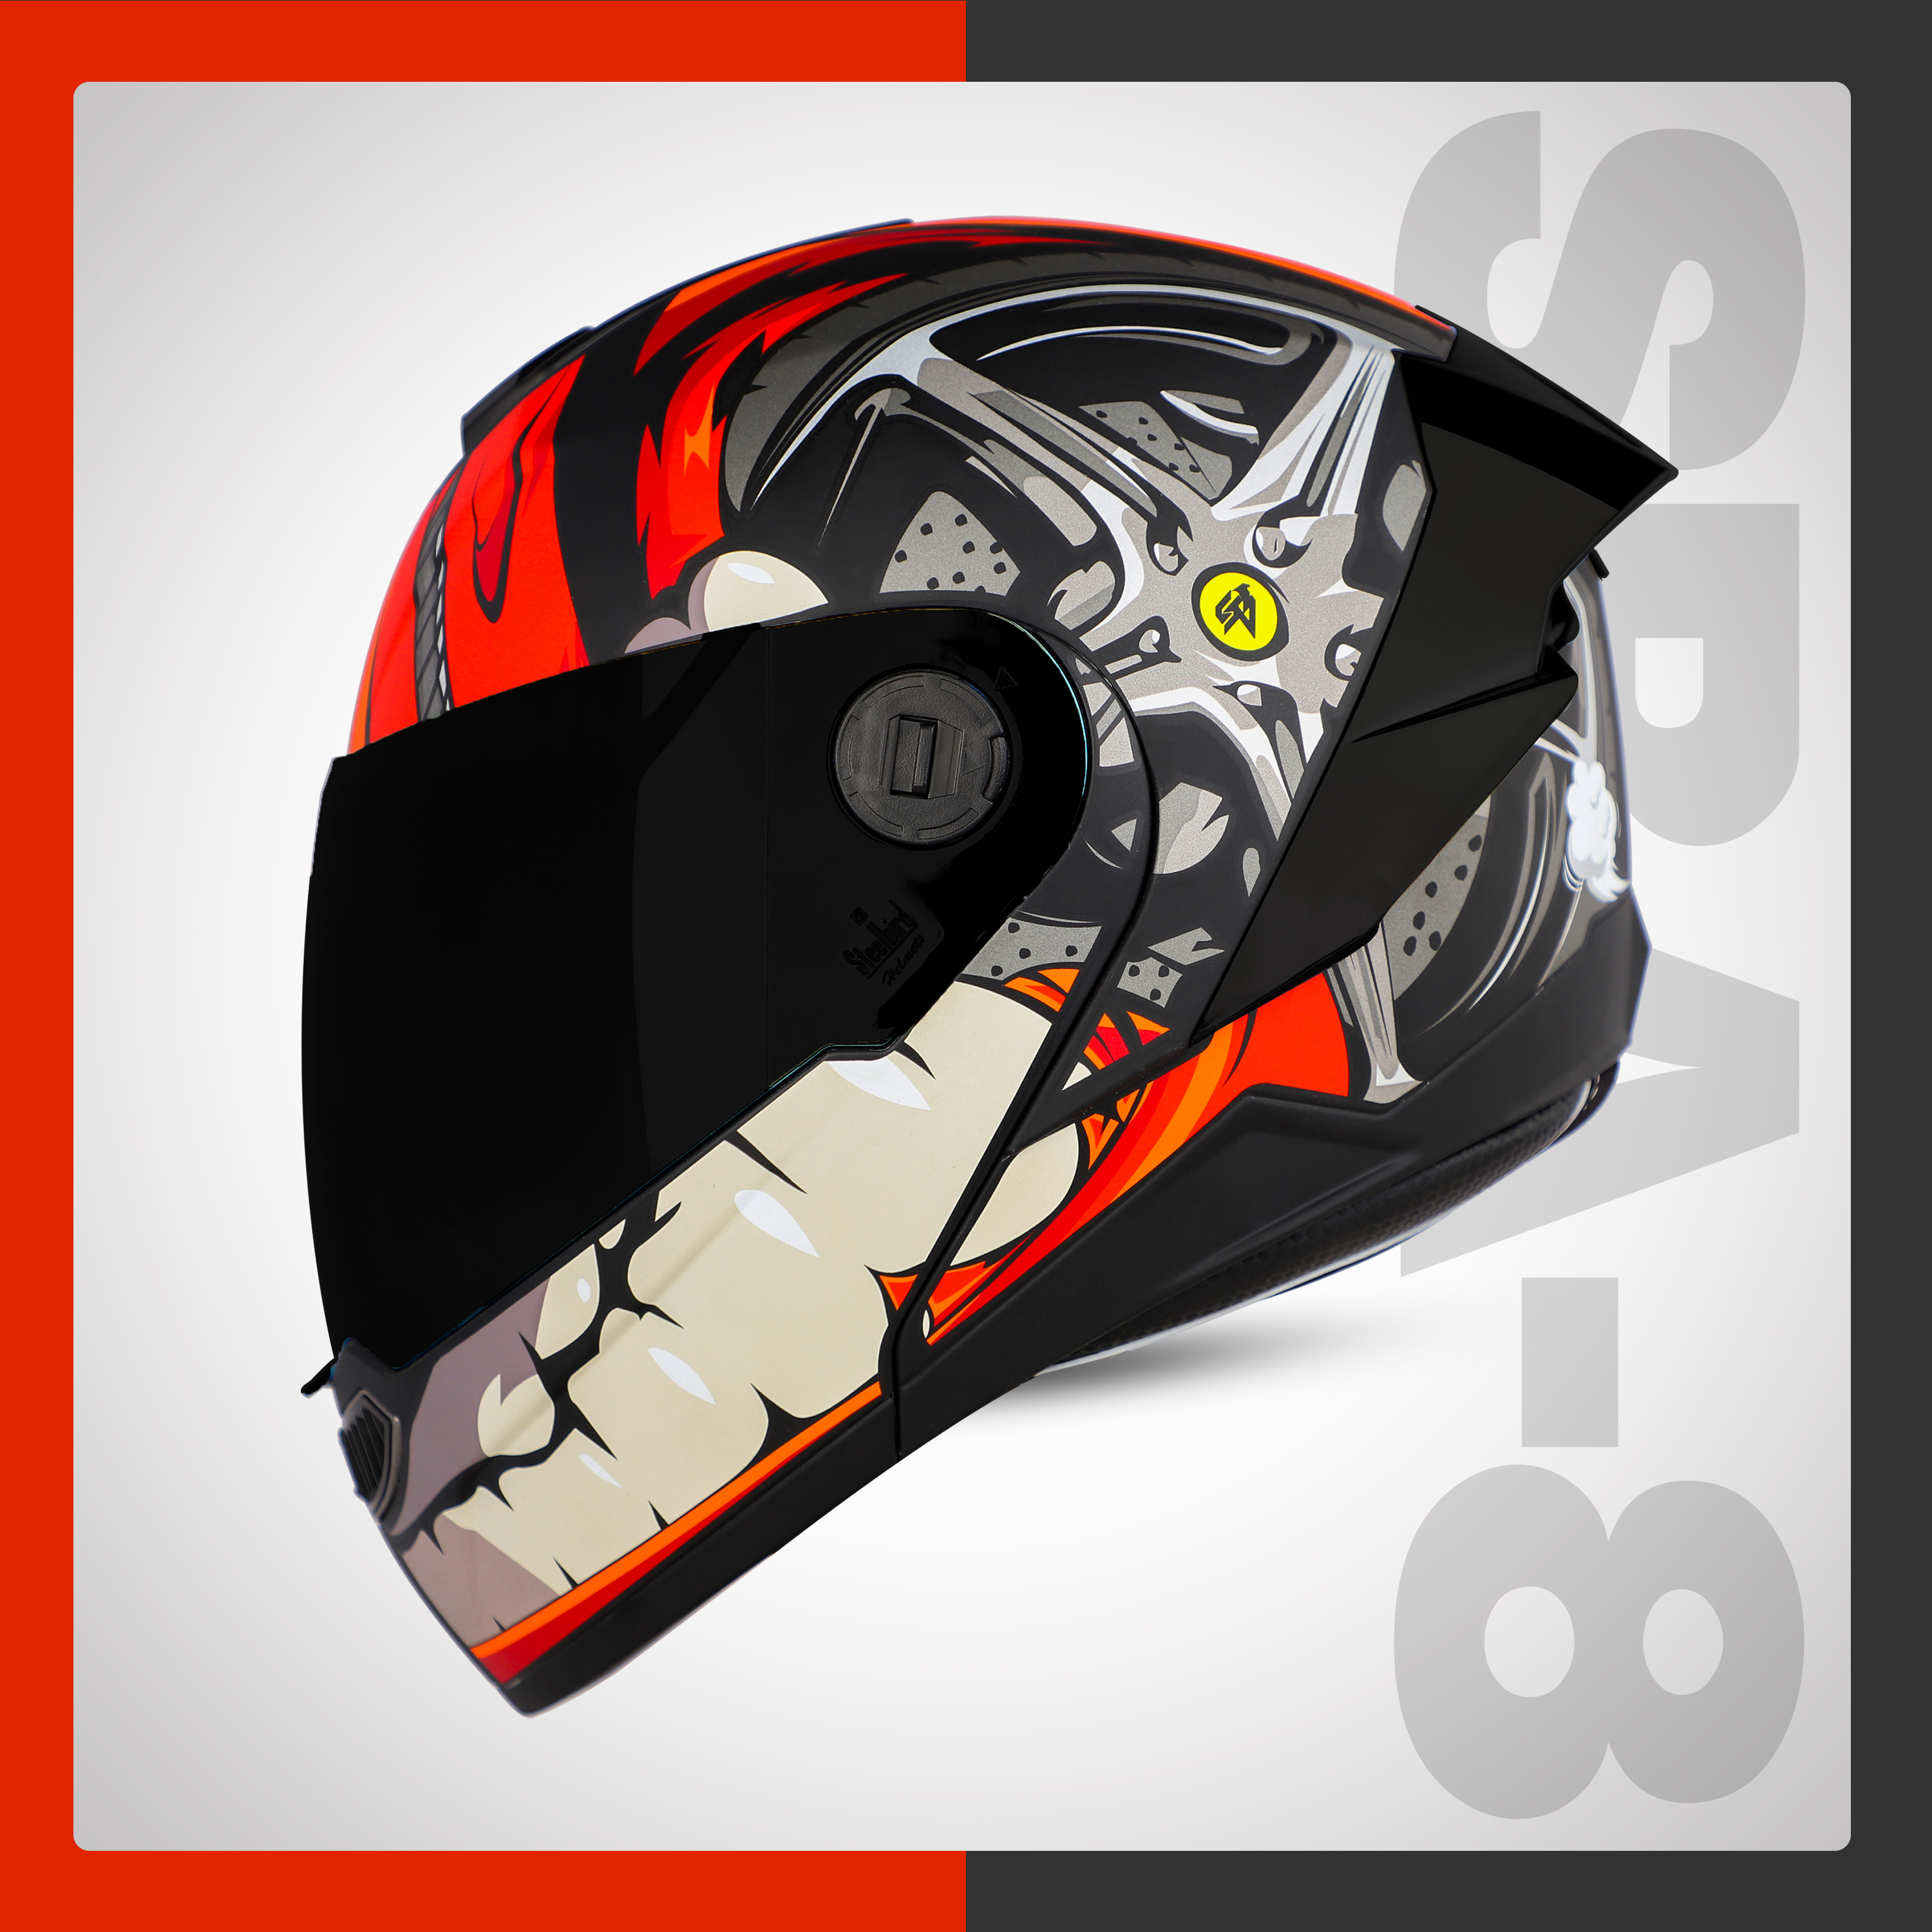 Steelbird SBA-8 Crazy Wheel ISI Certified Flip-Up Helmet For Men And Women (Matt Black Red With Smoke Visor)